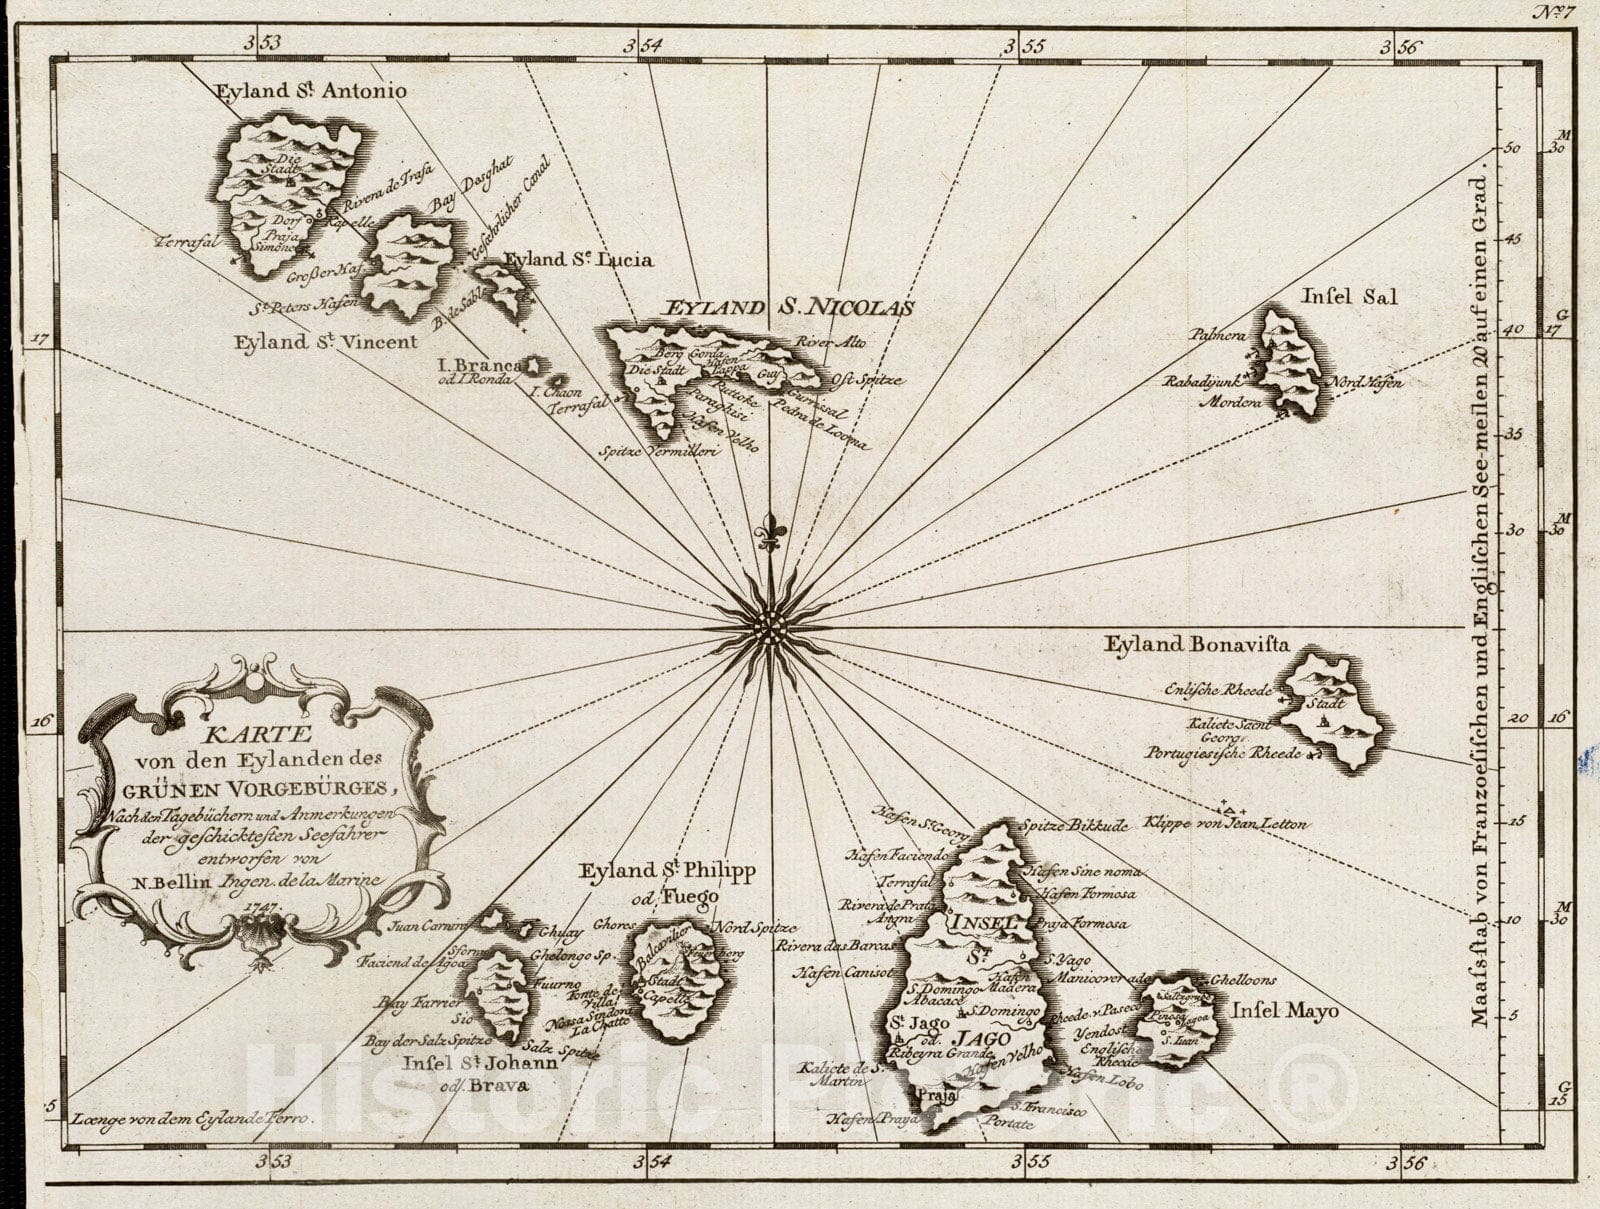 Historical Map, 1747 Karte von den Eylanden des GruIË†nen VorgebuIË†rges, nach den TagebuIË†chern und Anmerkungen der geschicktesten Seefahrer, Vintage Wall Art